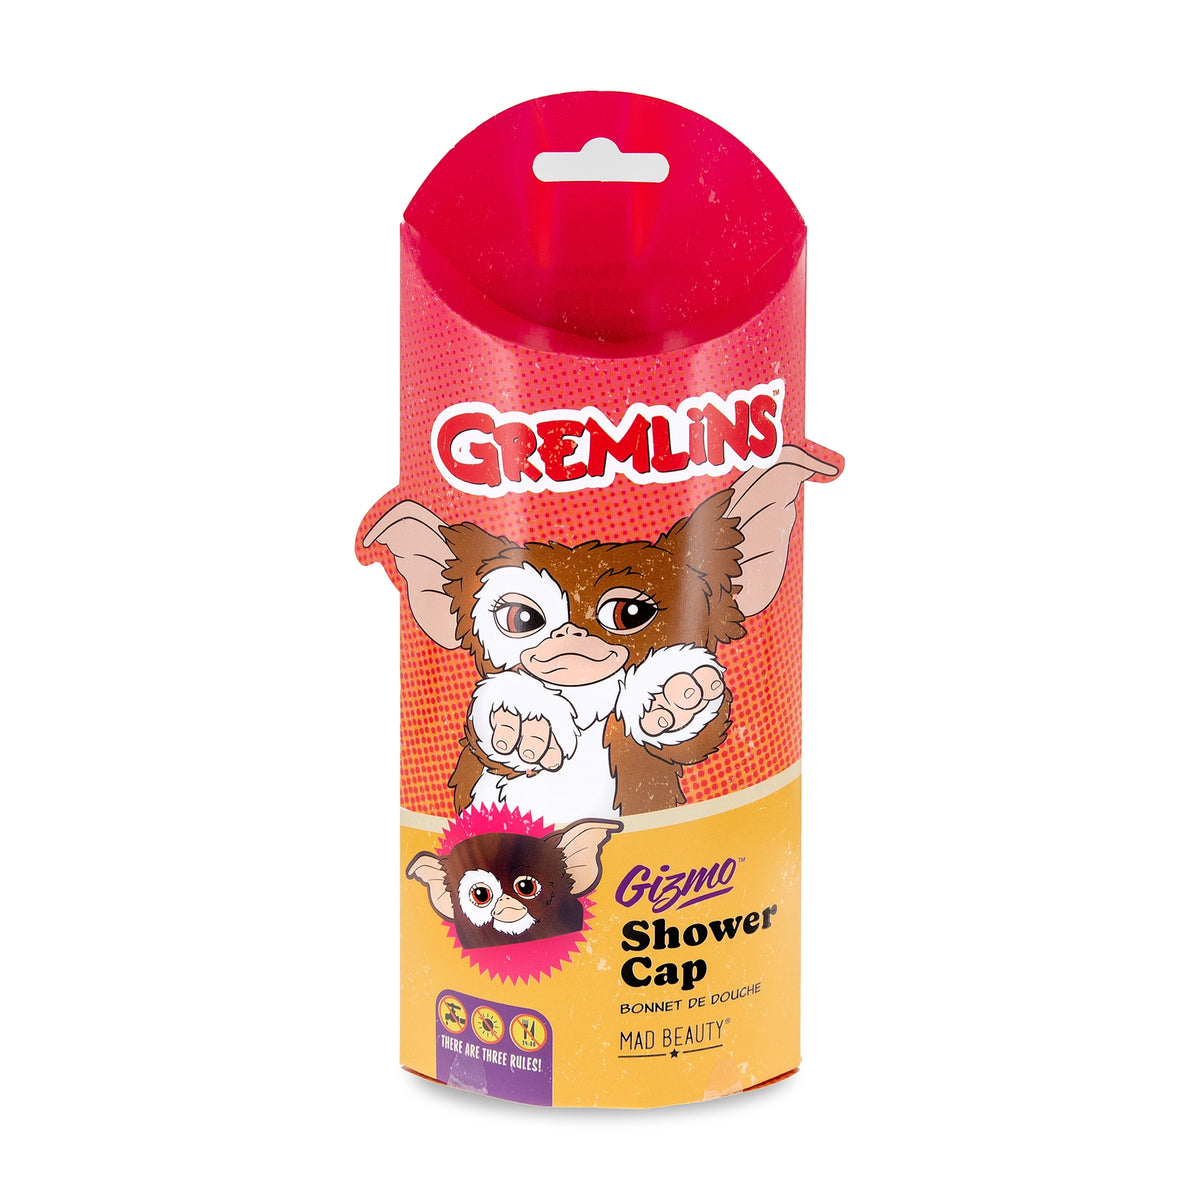 Gremlins Gizmo Shower Cap